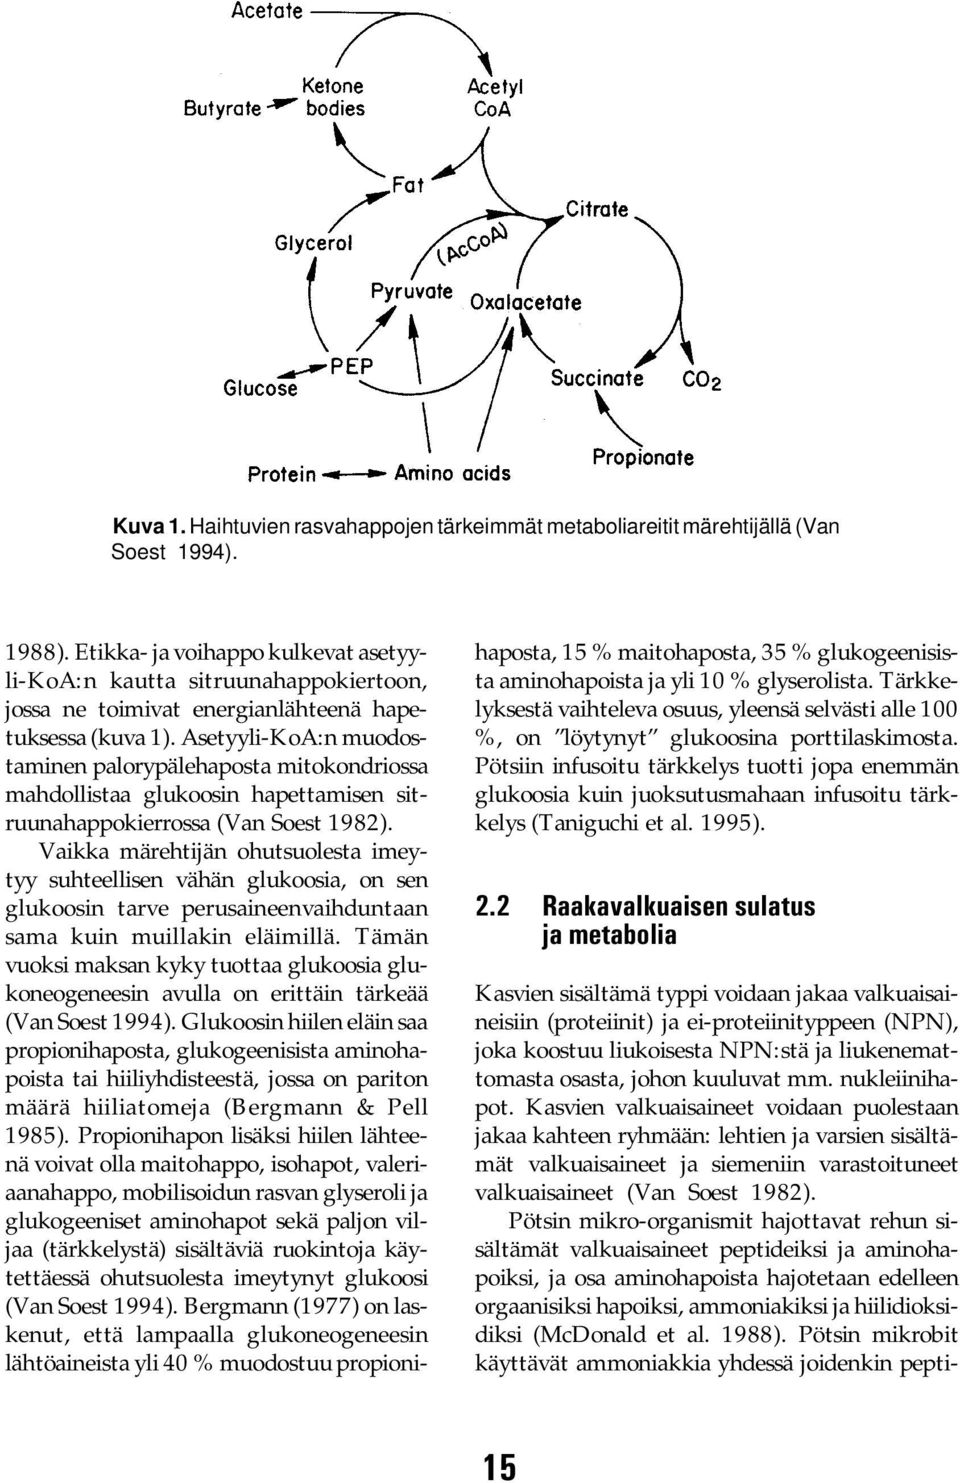 Asetyyli-KoA:n muodostaminen palorypälehaposta mitokondriossa mahdollistaa glukoosin hapettamisen sitruunahappokierrossa (Van Soest 1982).